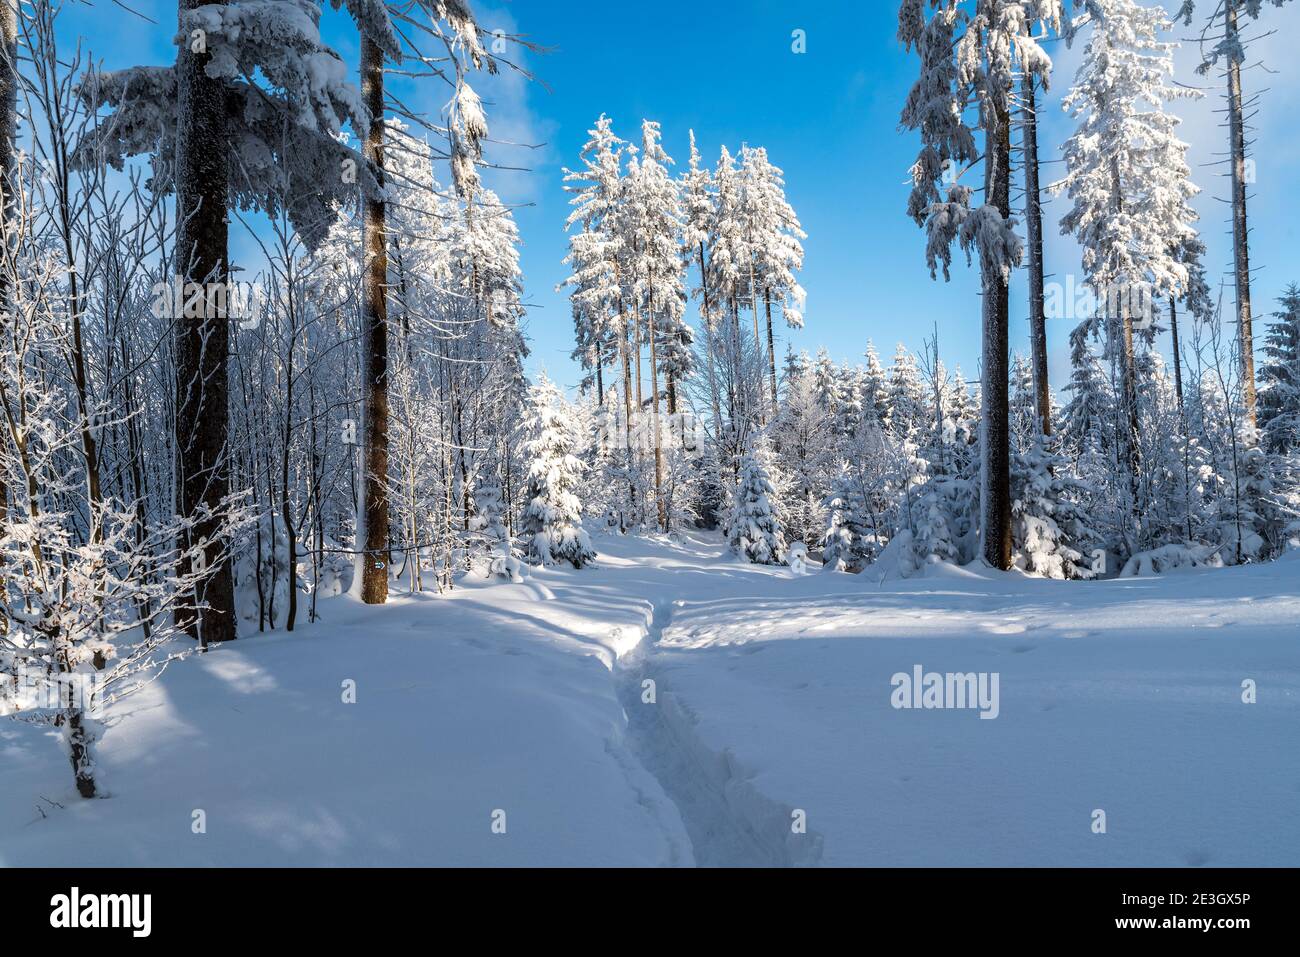 Winterlandschaft mit viel Schnee, gefrorenen Bäumen, Wanderweg und blauen Himmel in der Nähe Bily kriz in Moravskoslezske Beskiden Berge auf tschechisch - slova Stockfoto